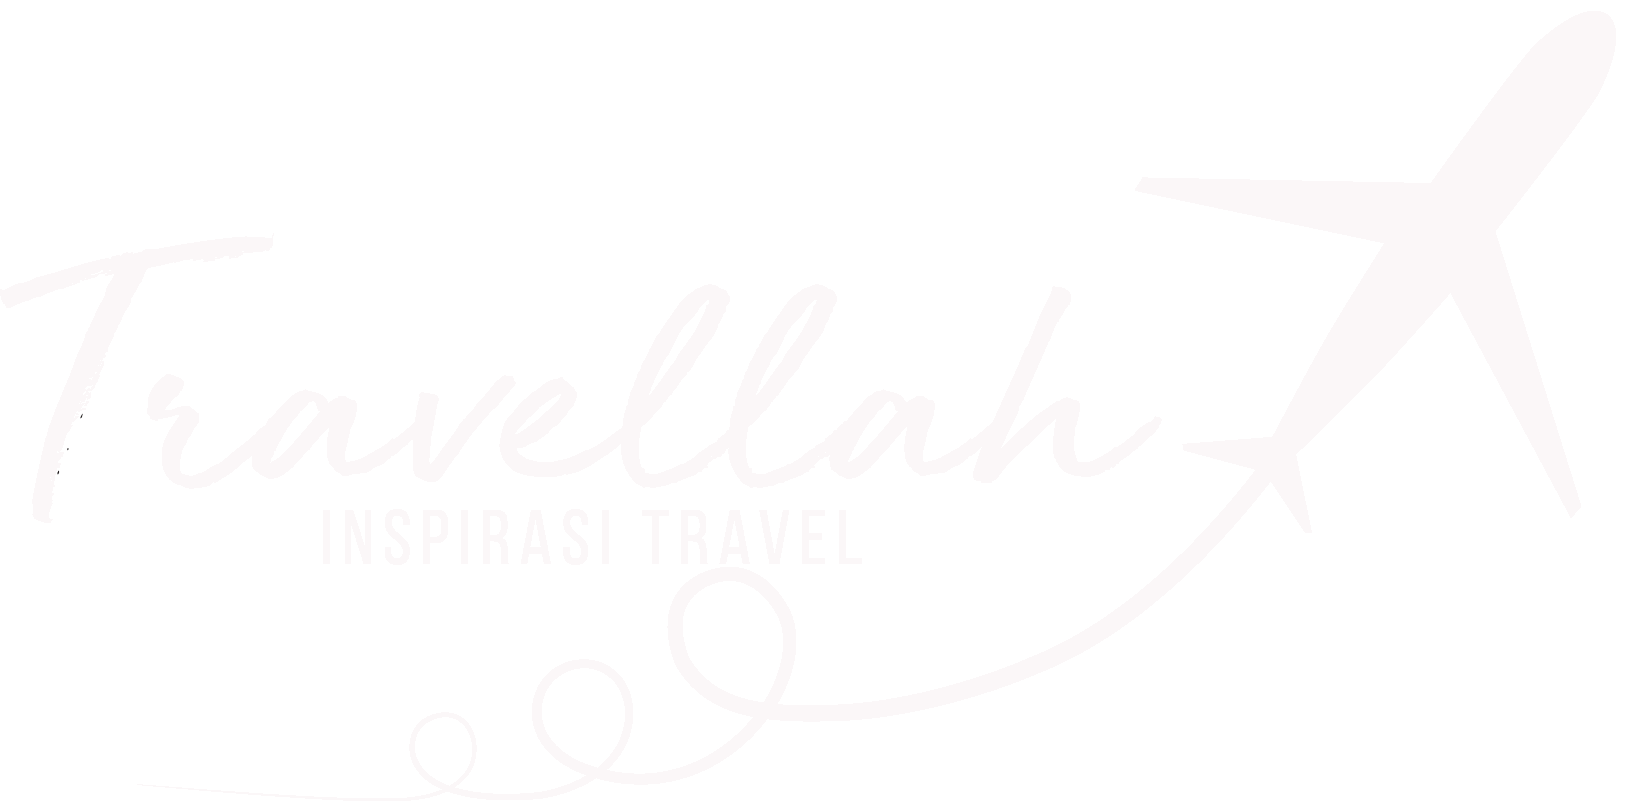 Travellah